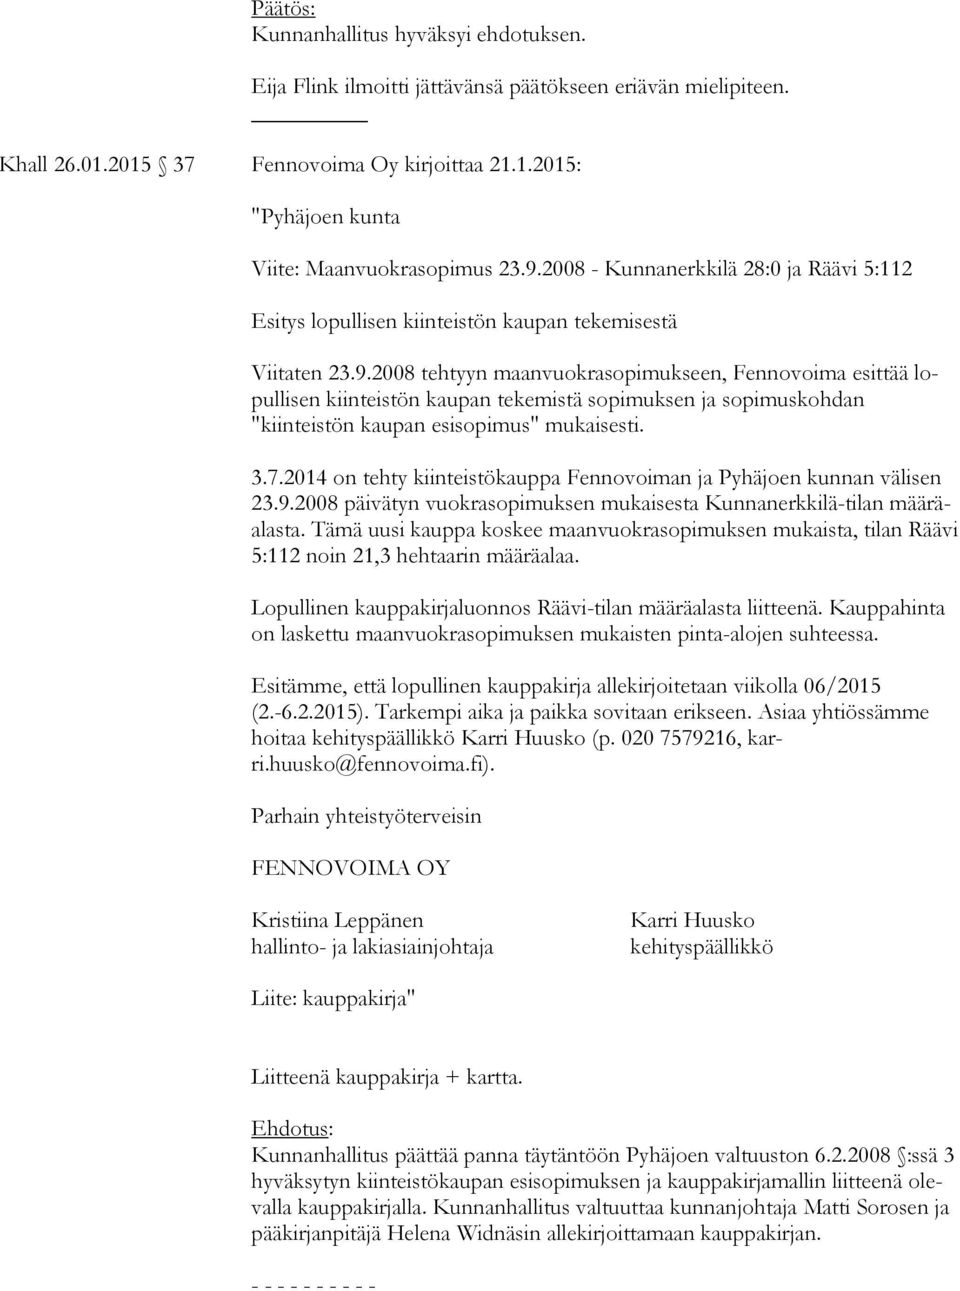 3.7.2014 on tehty kiinteistökauppa Fennovoiman ja Pyhäjoen kunnan välisen 23.9.2008 päivätyn vuokrasopimuksen mukaisesta Kunnanerkkilä-tilan mää räalas ta.